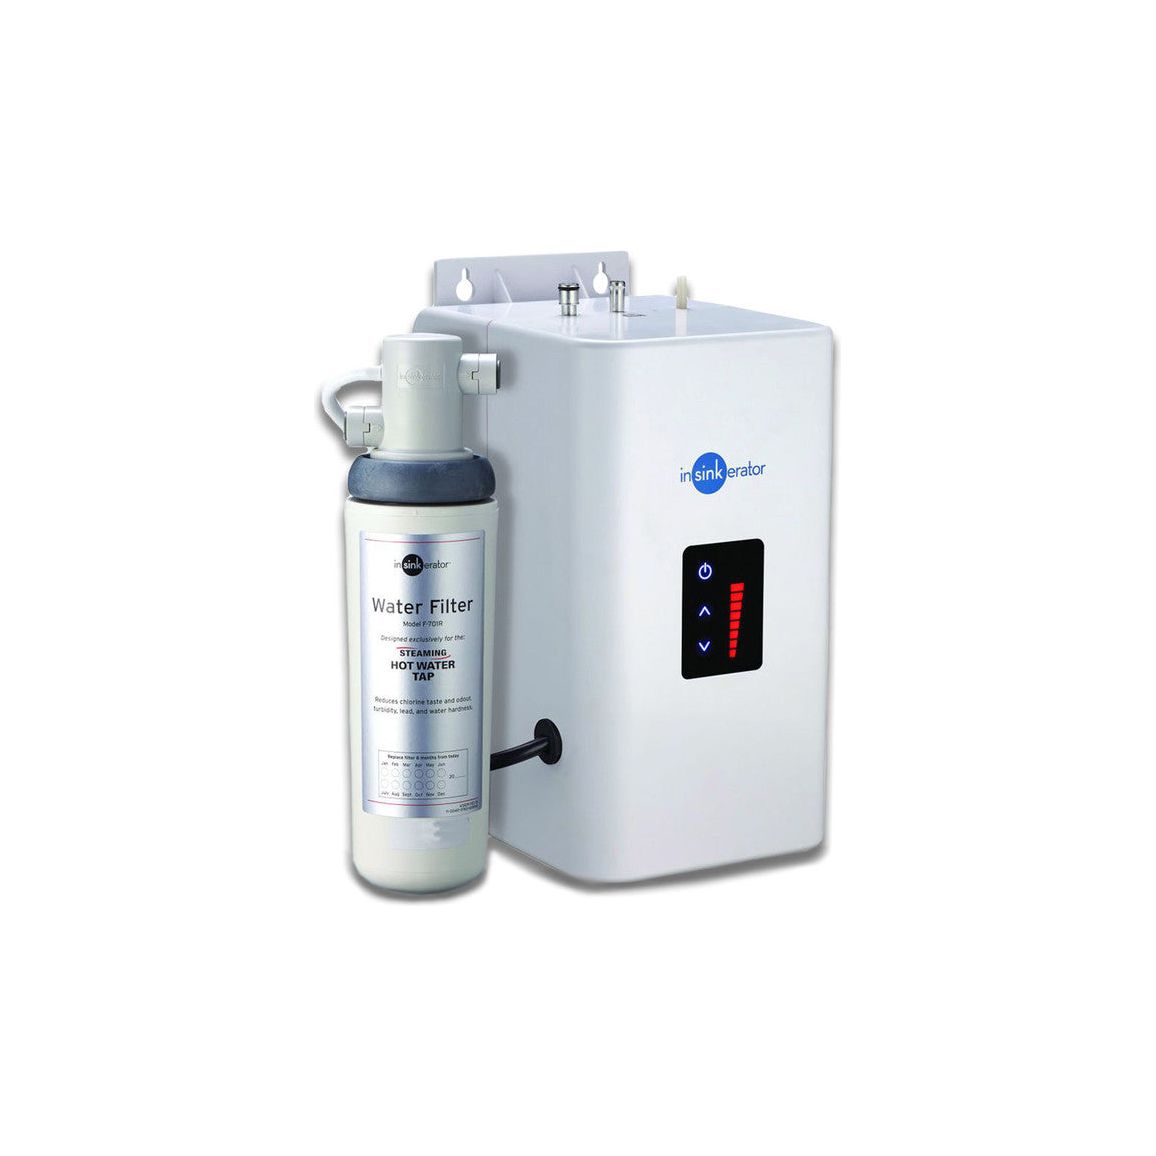 Mitigeur d'eau chaude/froide InSinkErator FHC3020 et réservoir Neo - Acier brossé